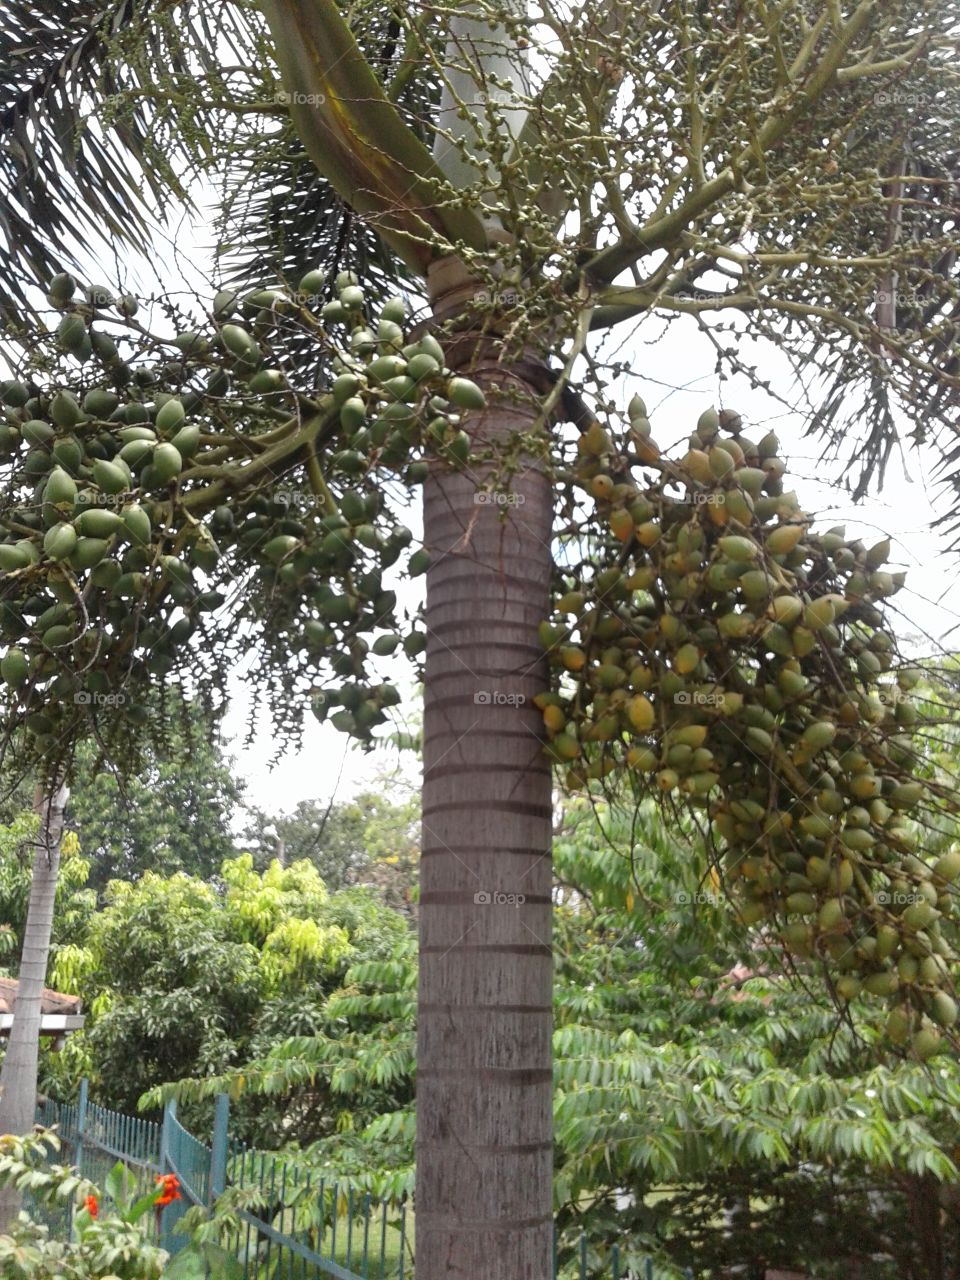 Palm species